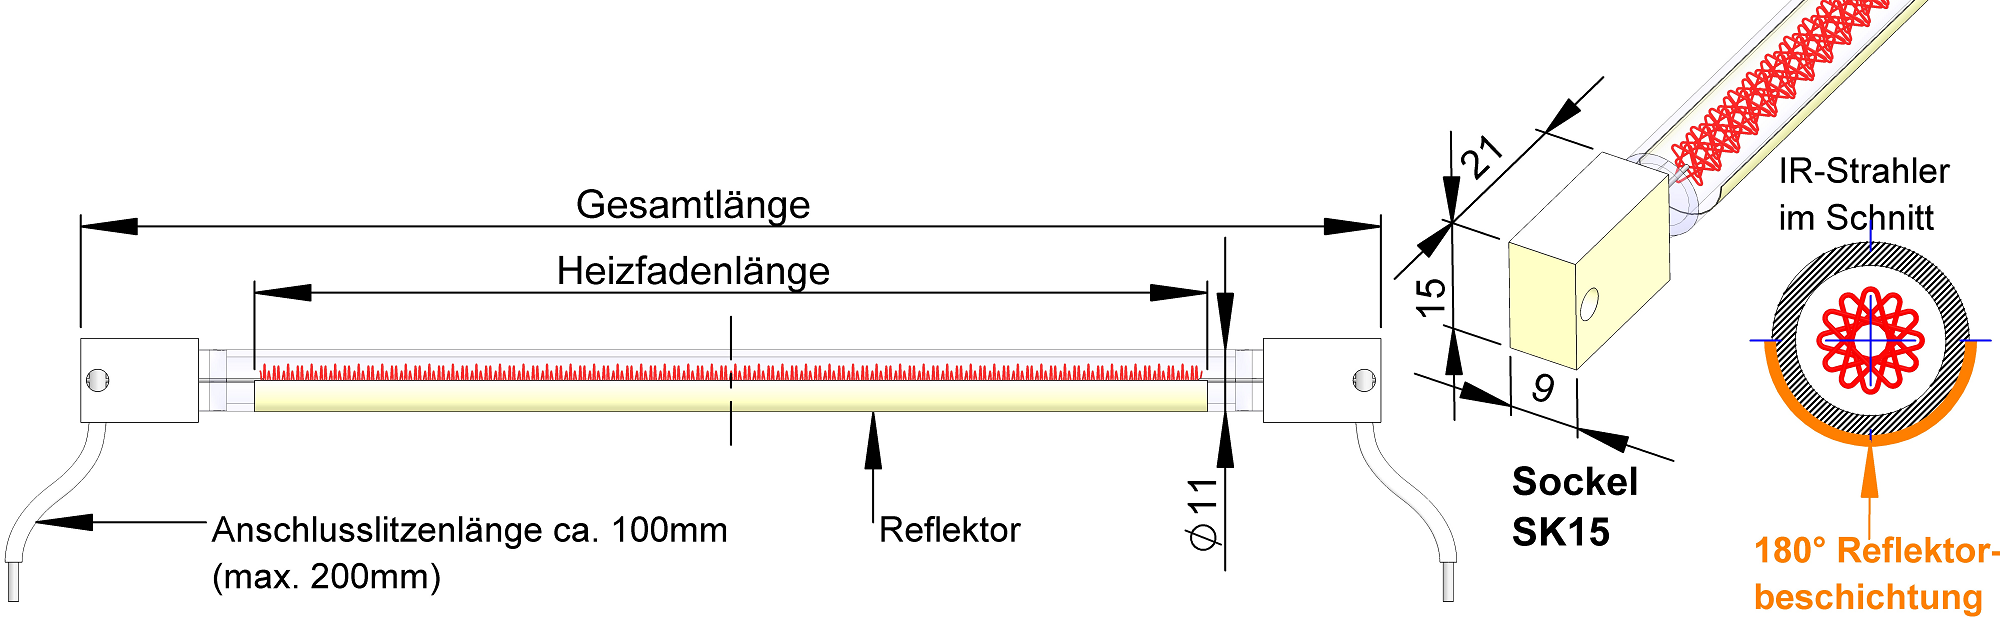 Infrarotstrahler Einzelstrahler und Zubehoer Schnelle Mittelwelle Strahler mit SK15 Sockel